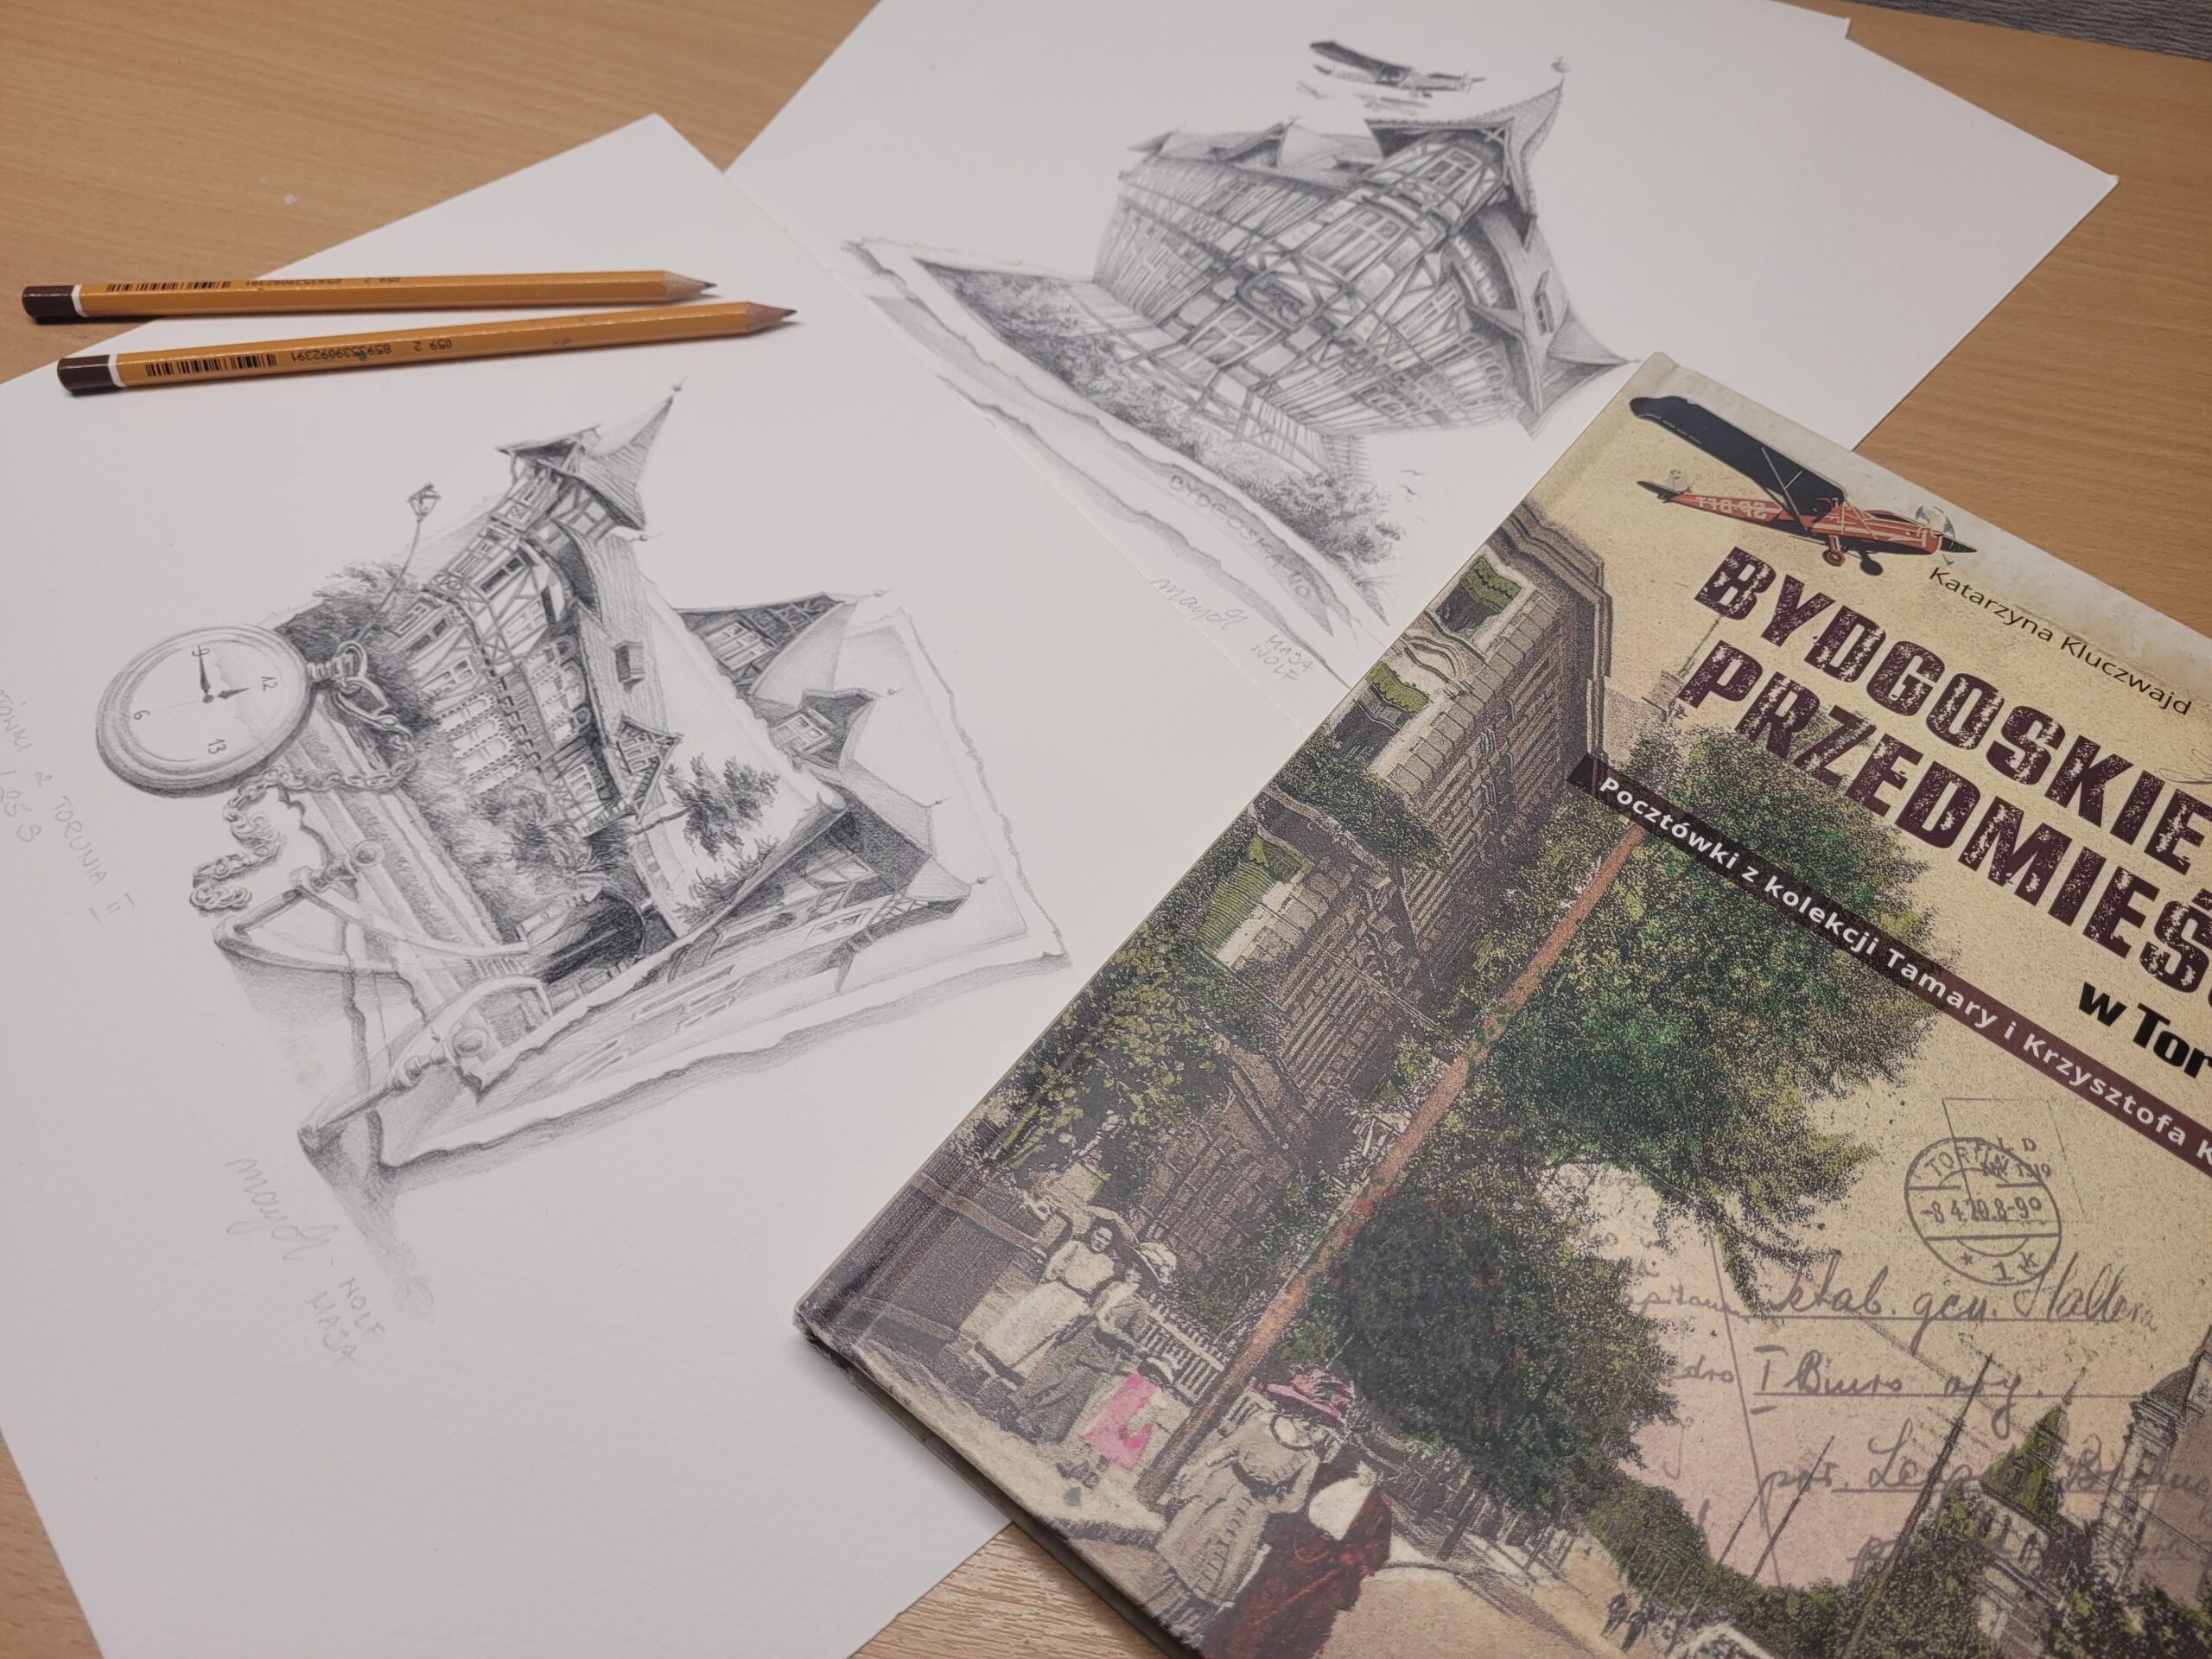 zdjęcie przedstawia album ze starymi zdjęciami "Bydgoskie Przedmieście w Toruniu", 2 rysunki Mai Wolf zainspirowane lekturą tego albumu i 2 ołówki rysunkowe